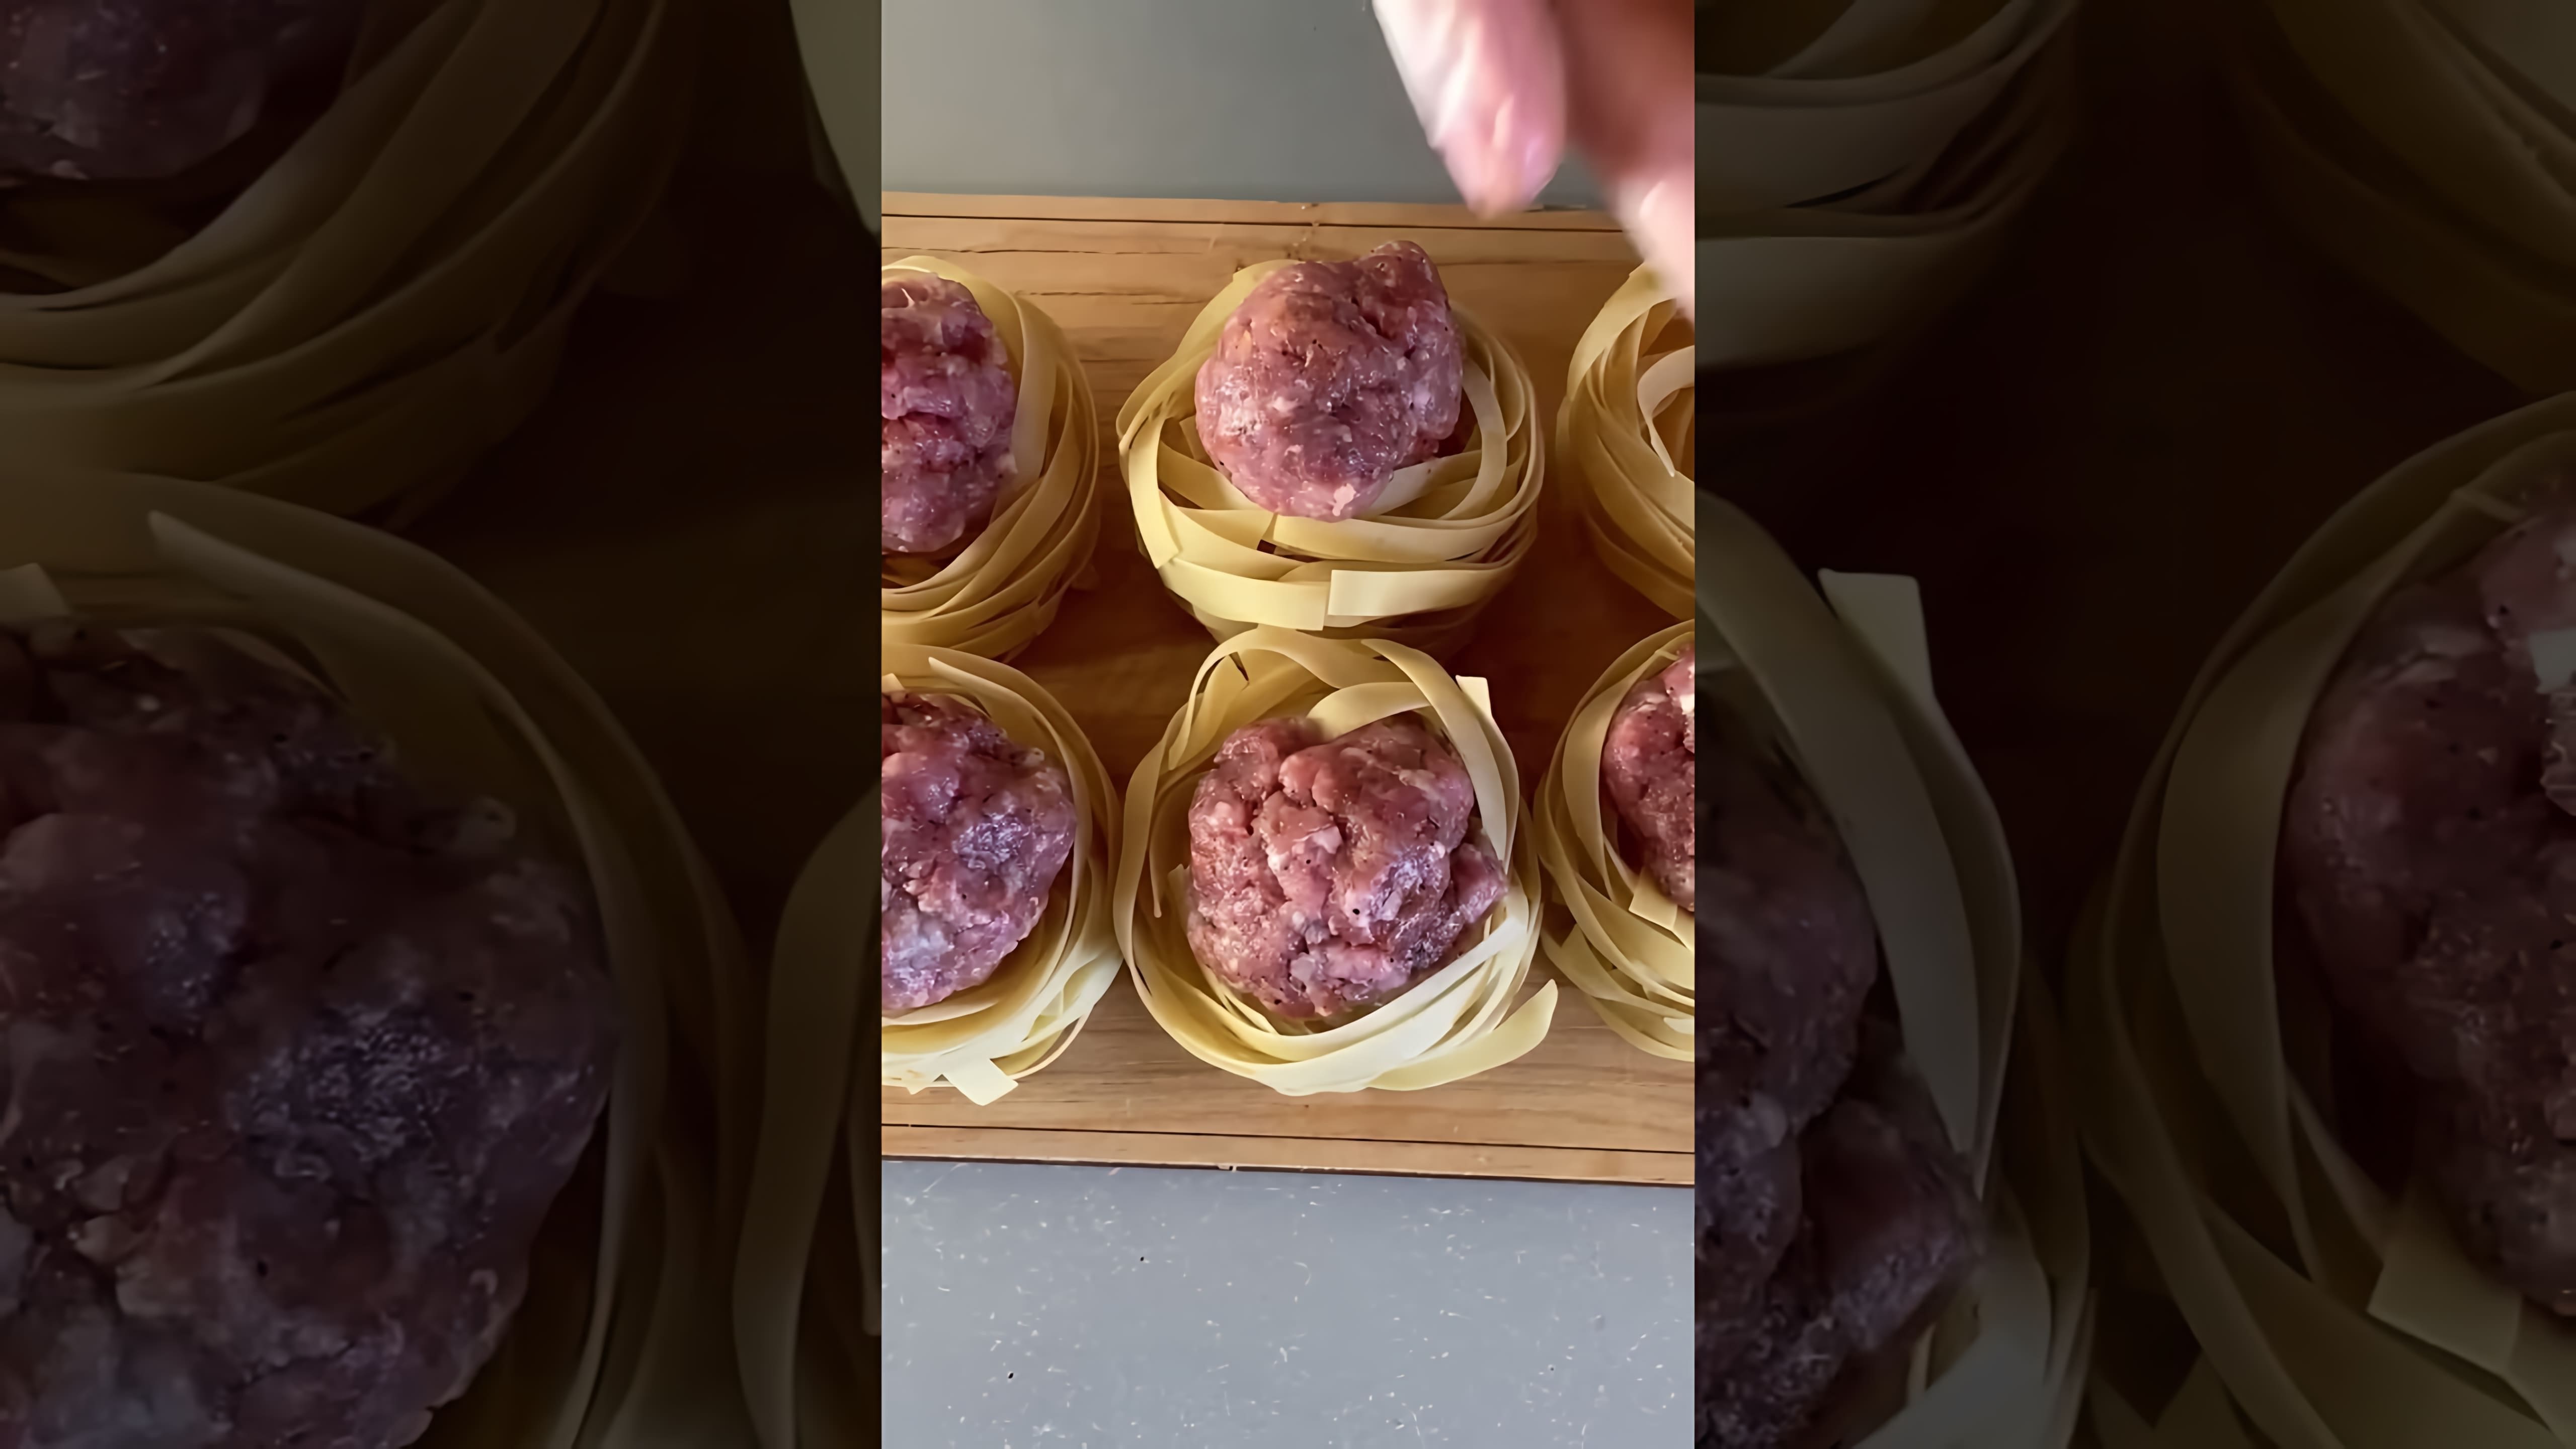 "Обожаю Этот Рецепт! Гнезда из Макароны с Фаршем!" - это видео-ролик, который демонстрирует процесс приготовления вкусного и оригинального блюда